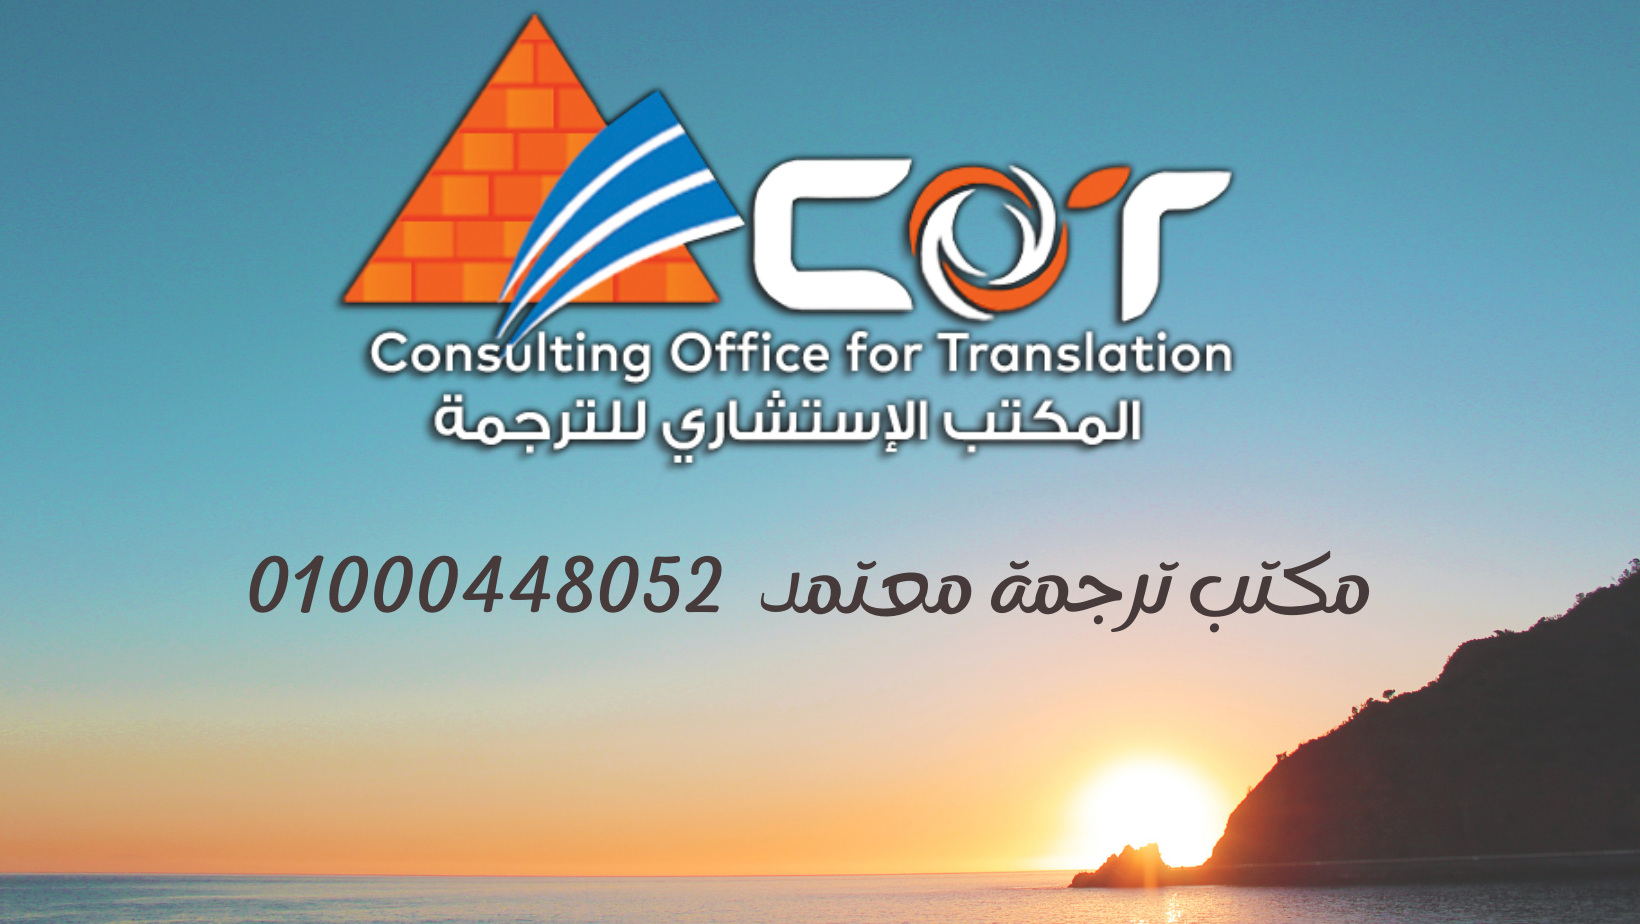 مكتب ترجمة معتمد - المكتب الاستشارى للترجمة 01000448052